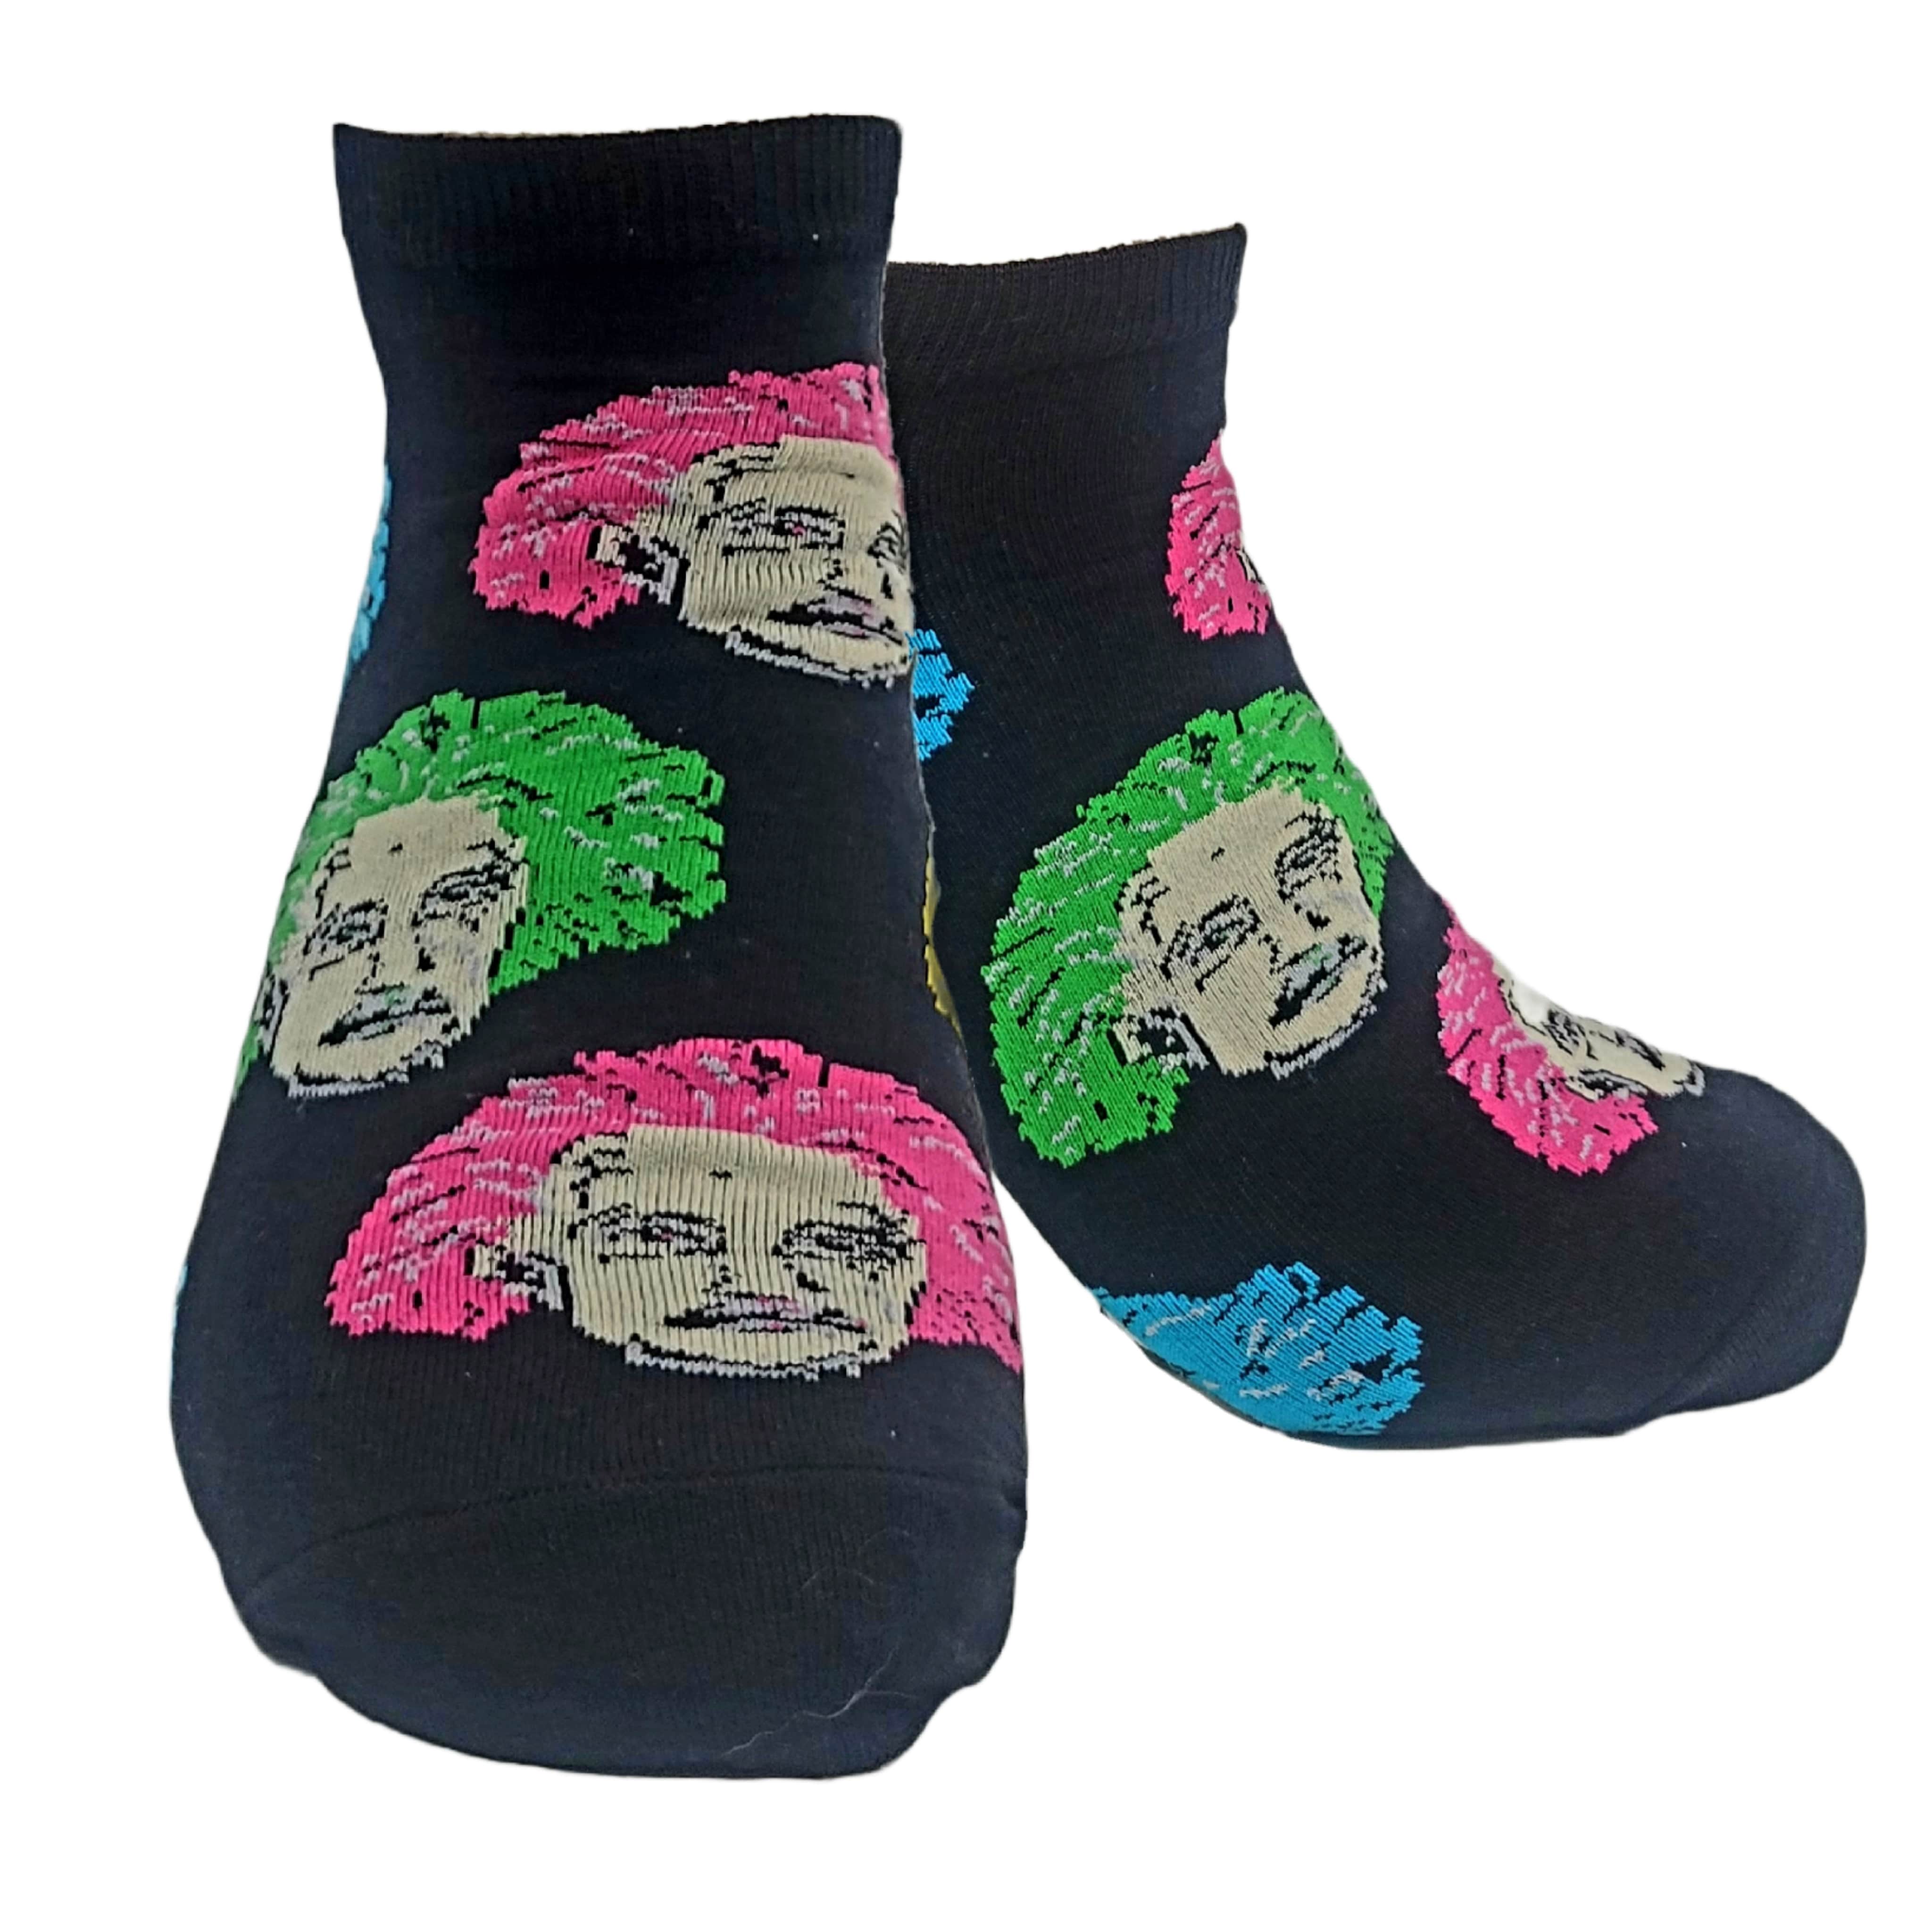 Albert Einstein Ankle Socks (Adult Large)